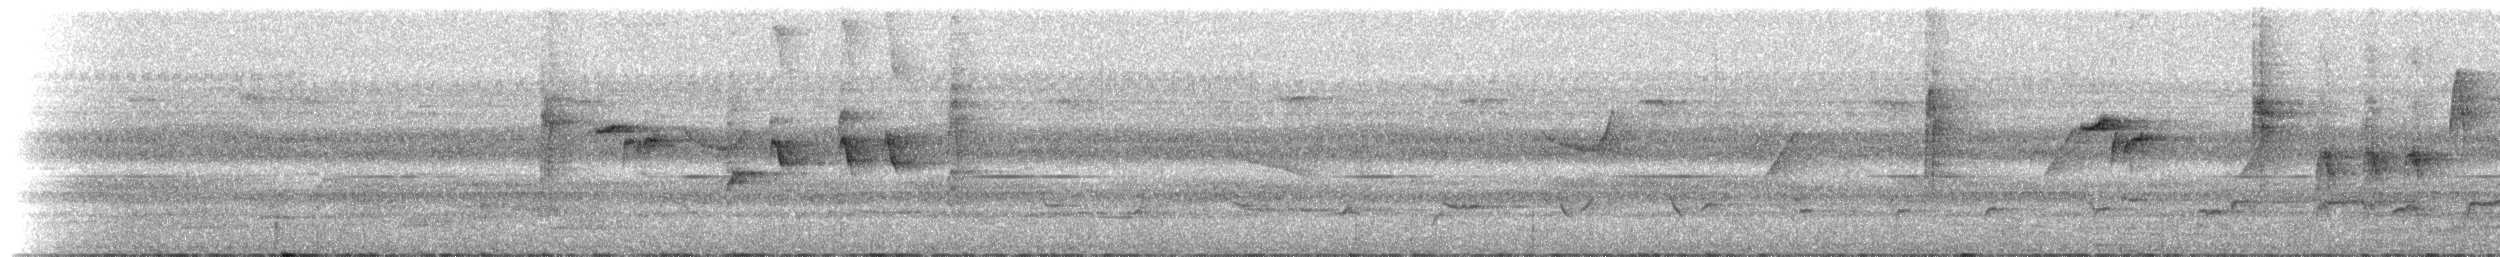 Ak Karınlı Tepeli Sinekkapan (albiventris) - ML212676